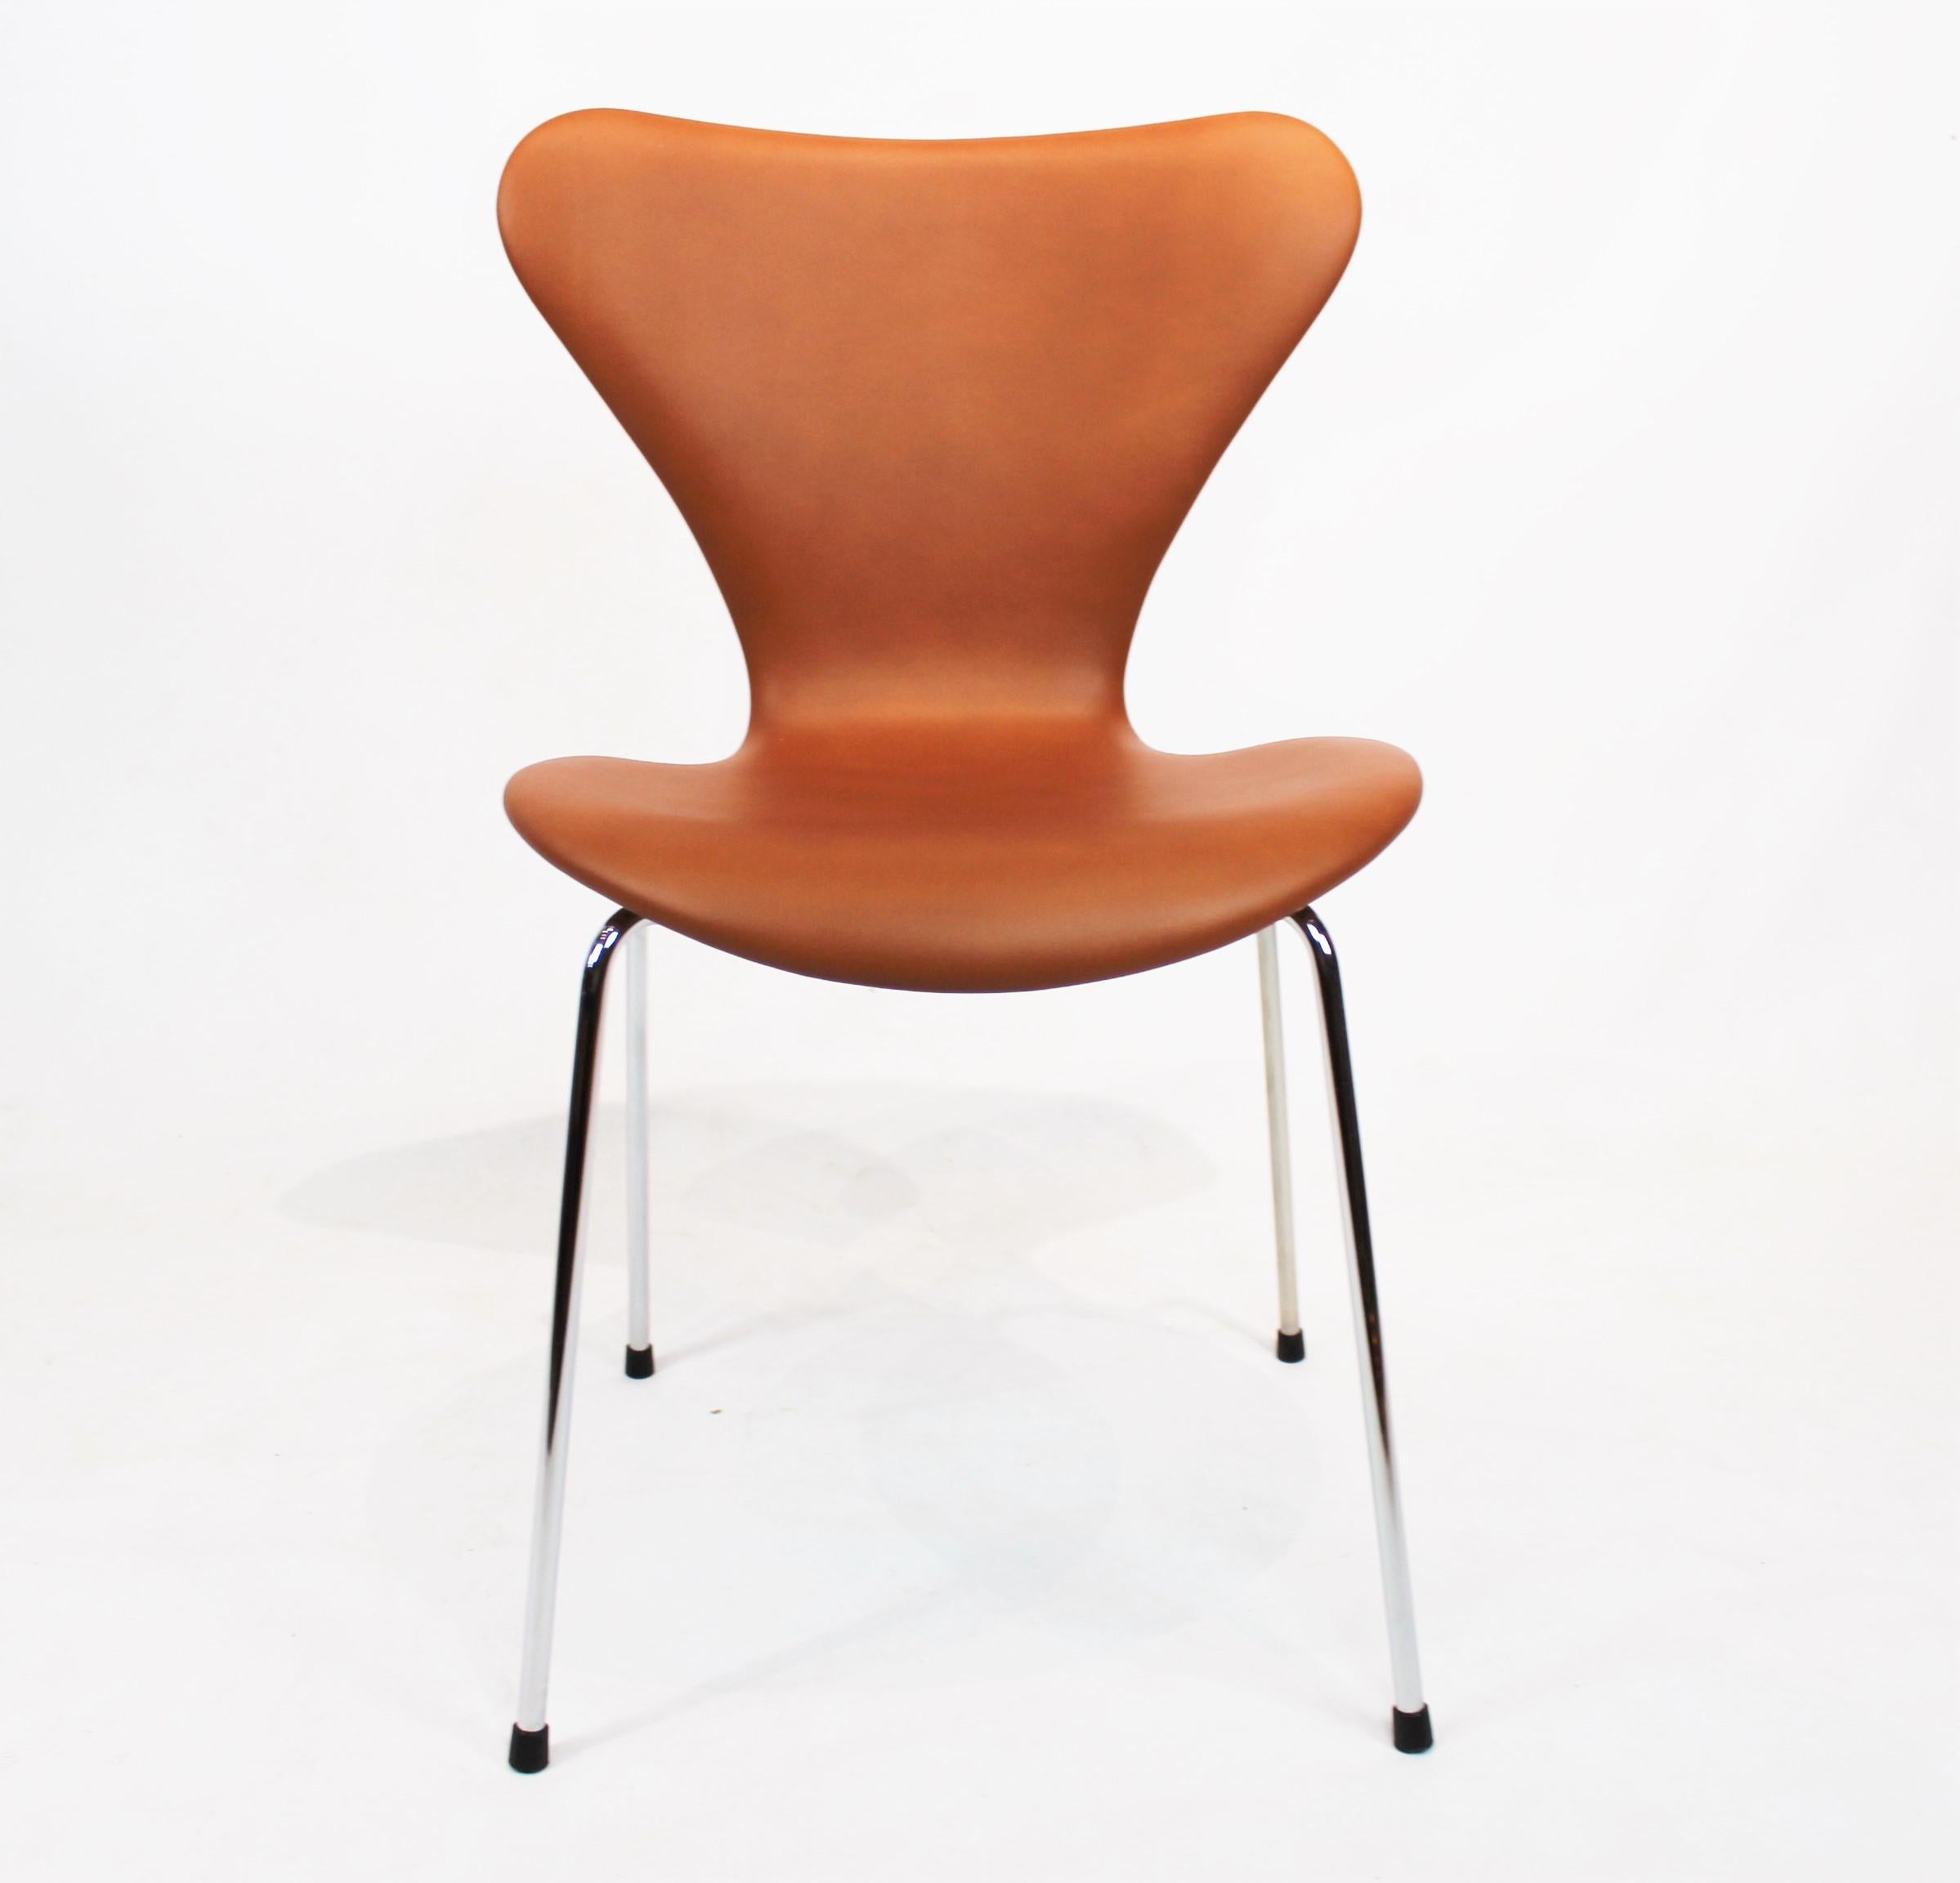 Ensemble exquis de quatre chaises de la série 7, modèle 3107, recouvertes d'un luxueux cuir cognac, témoignant du design visionnaire d'Arne Jacobsen.

Ces chaises, manifestation classique du design emblématique de la série sept d'Arne Jacobsen, sont